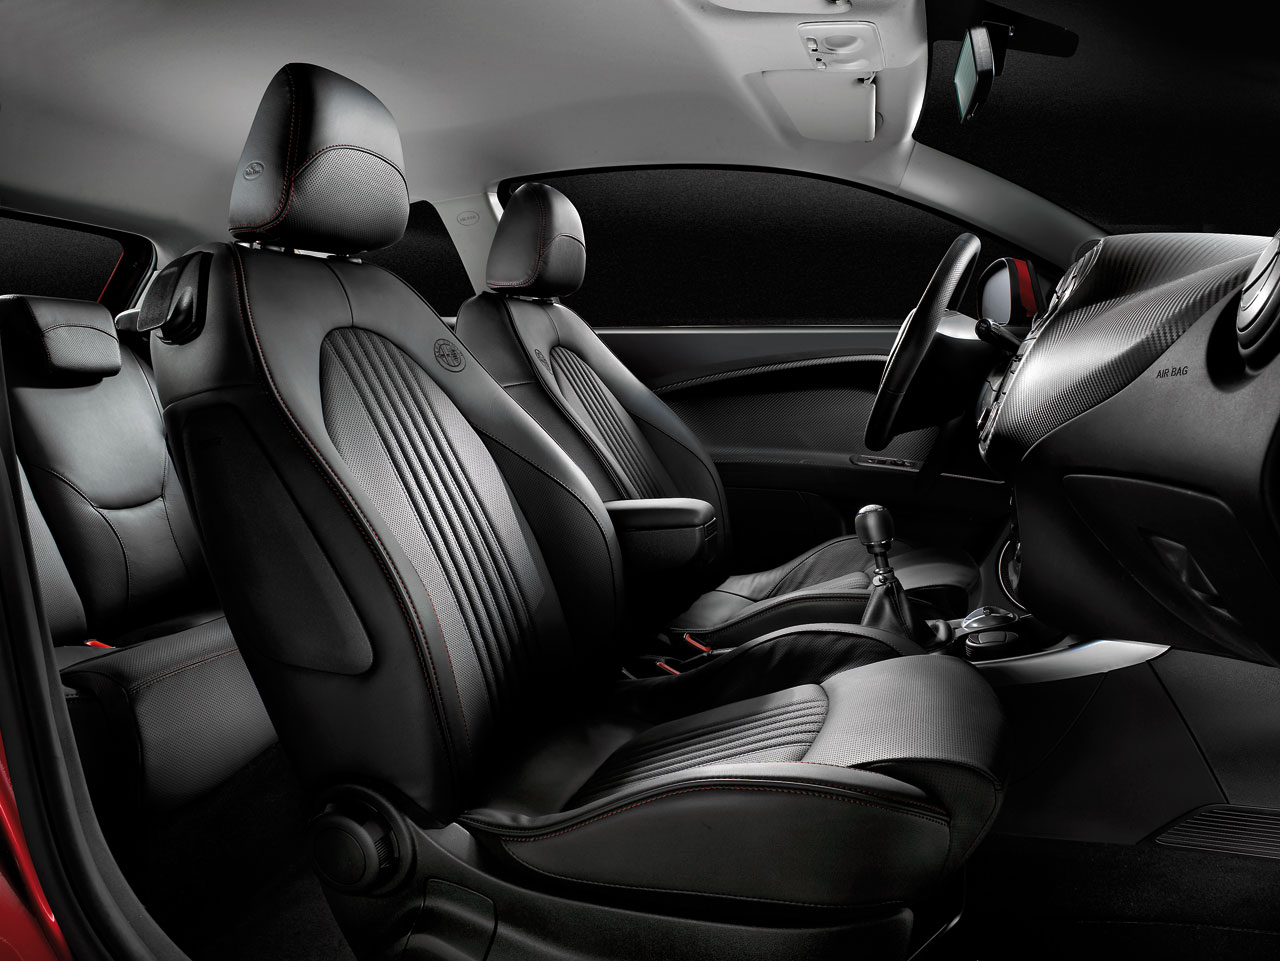 Alfa Romeo MiTo interior - Seats